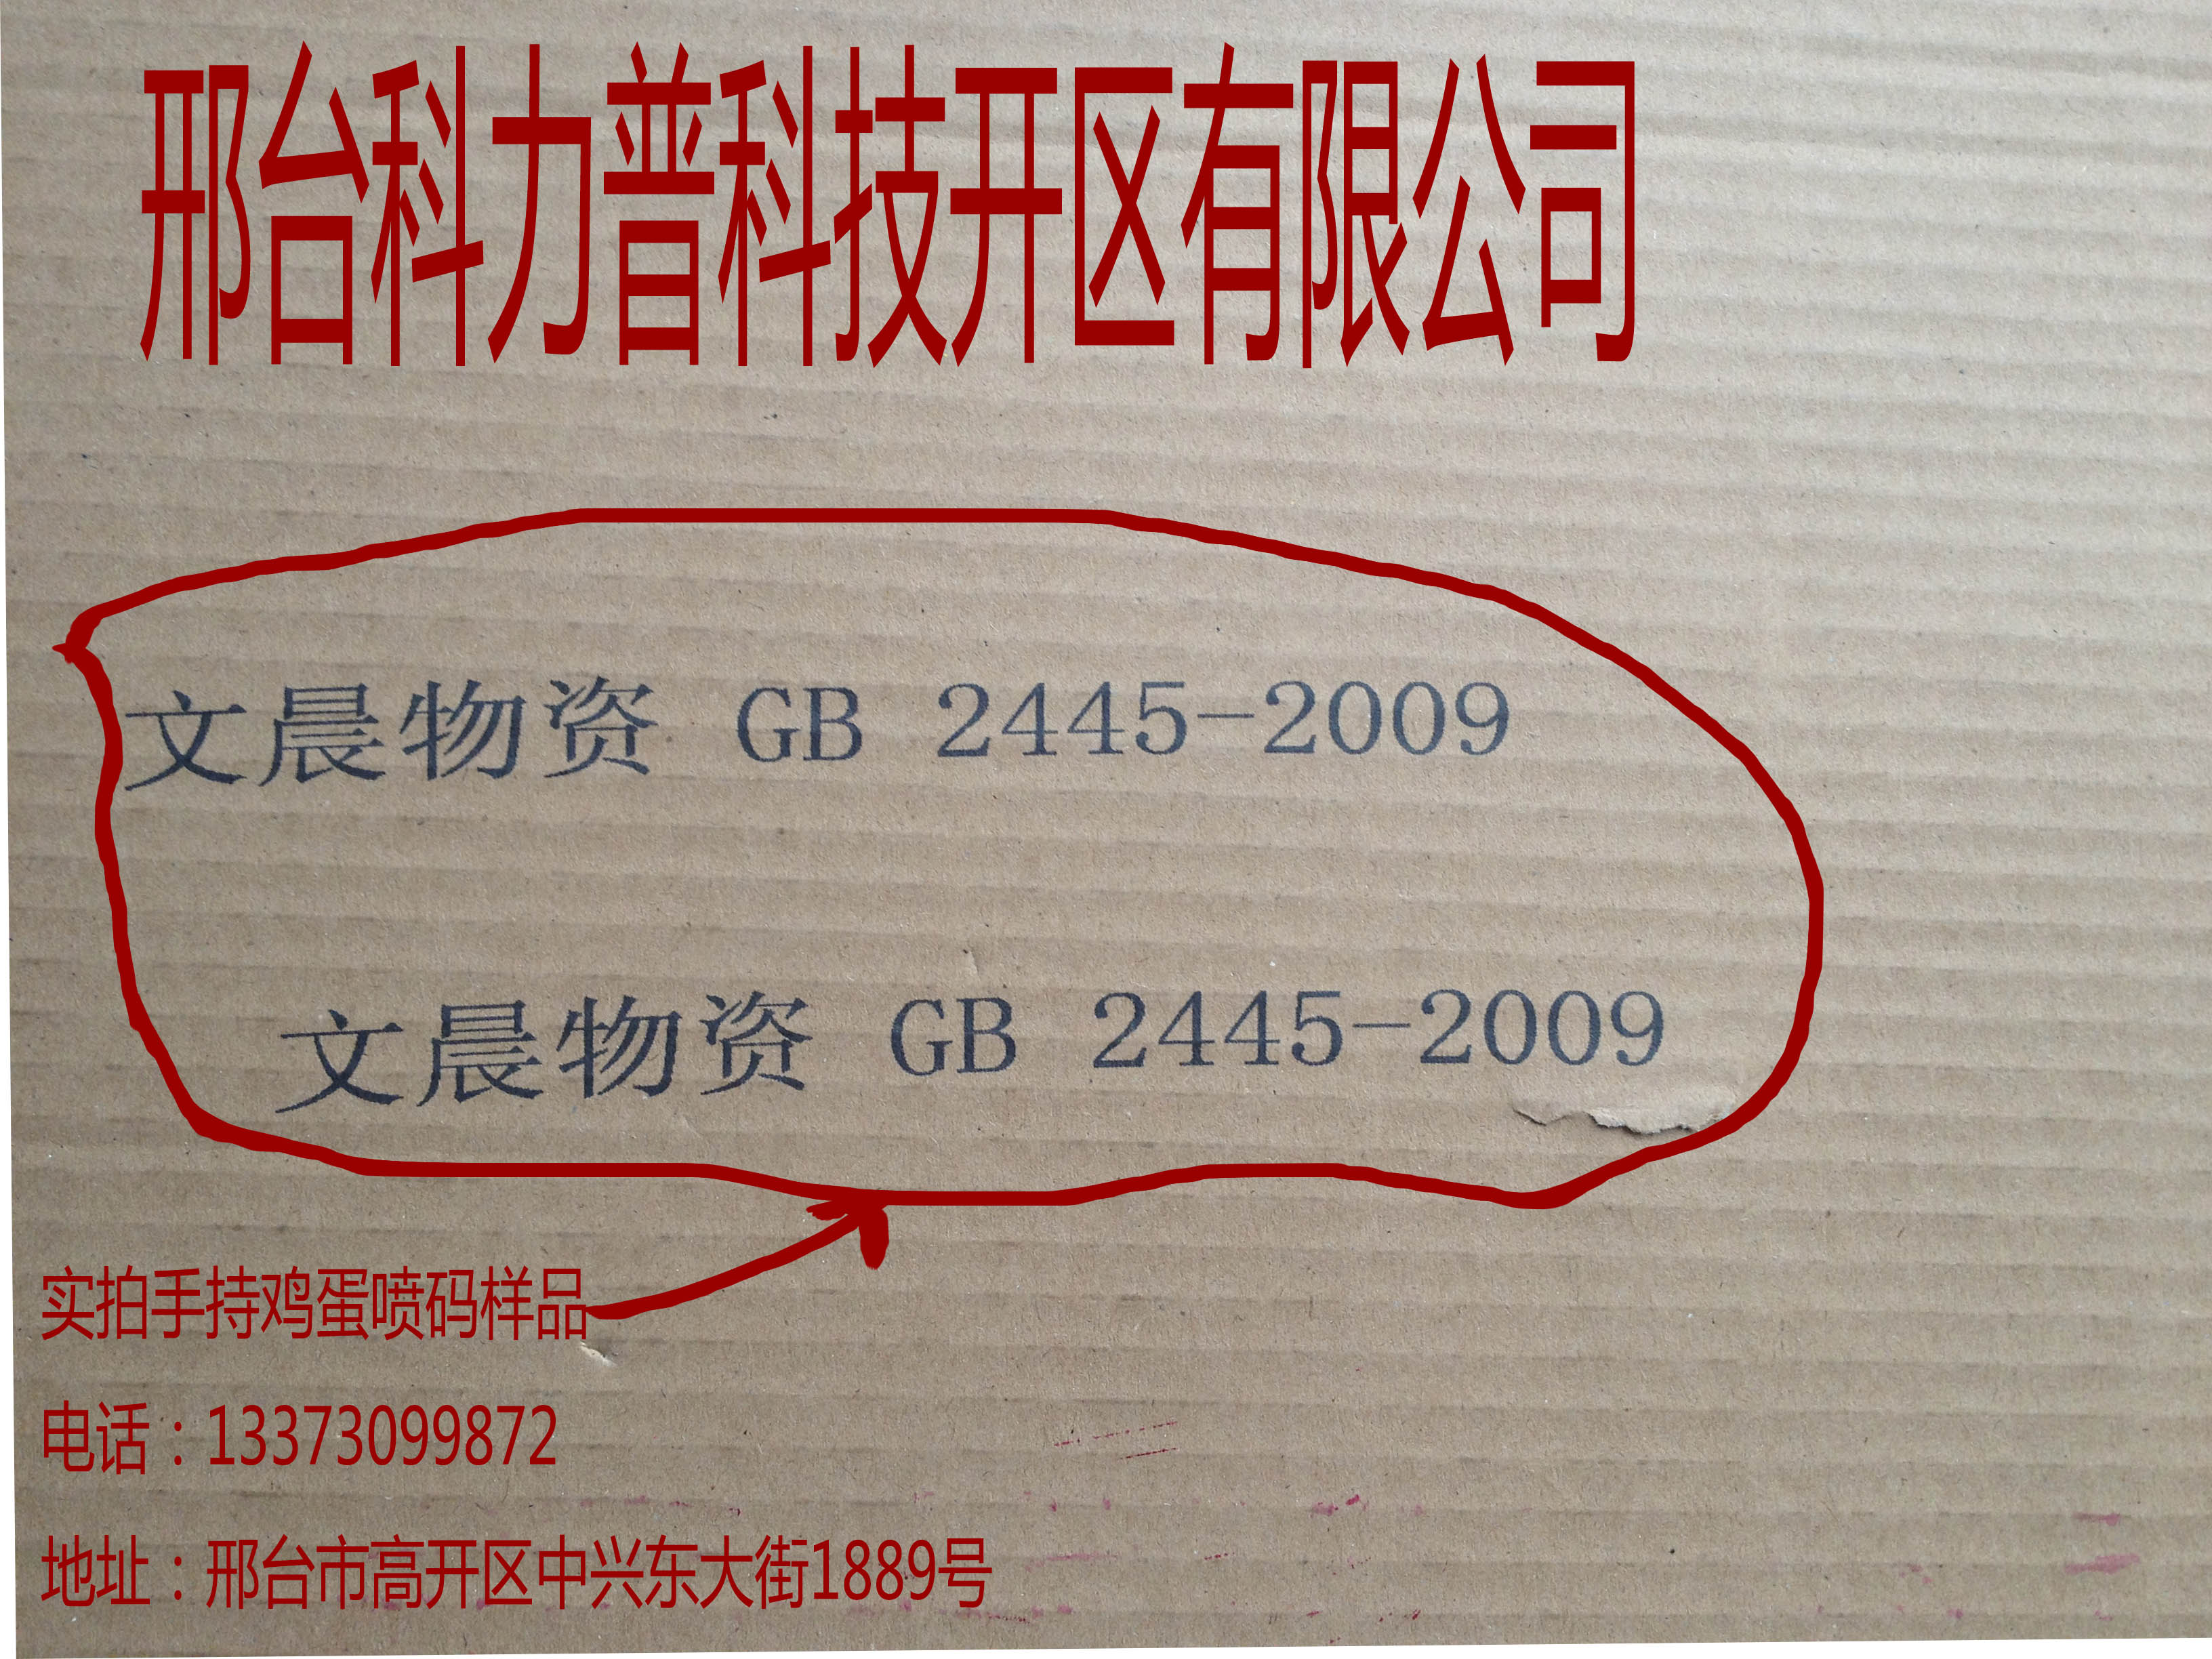 供应北京纸箱喷码机板材喷码机生产批发